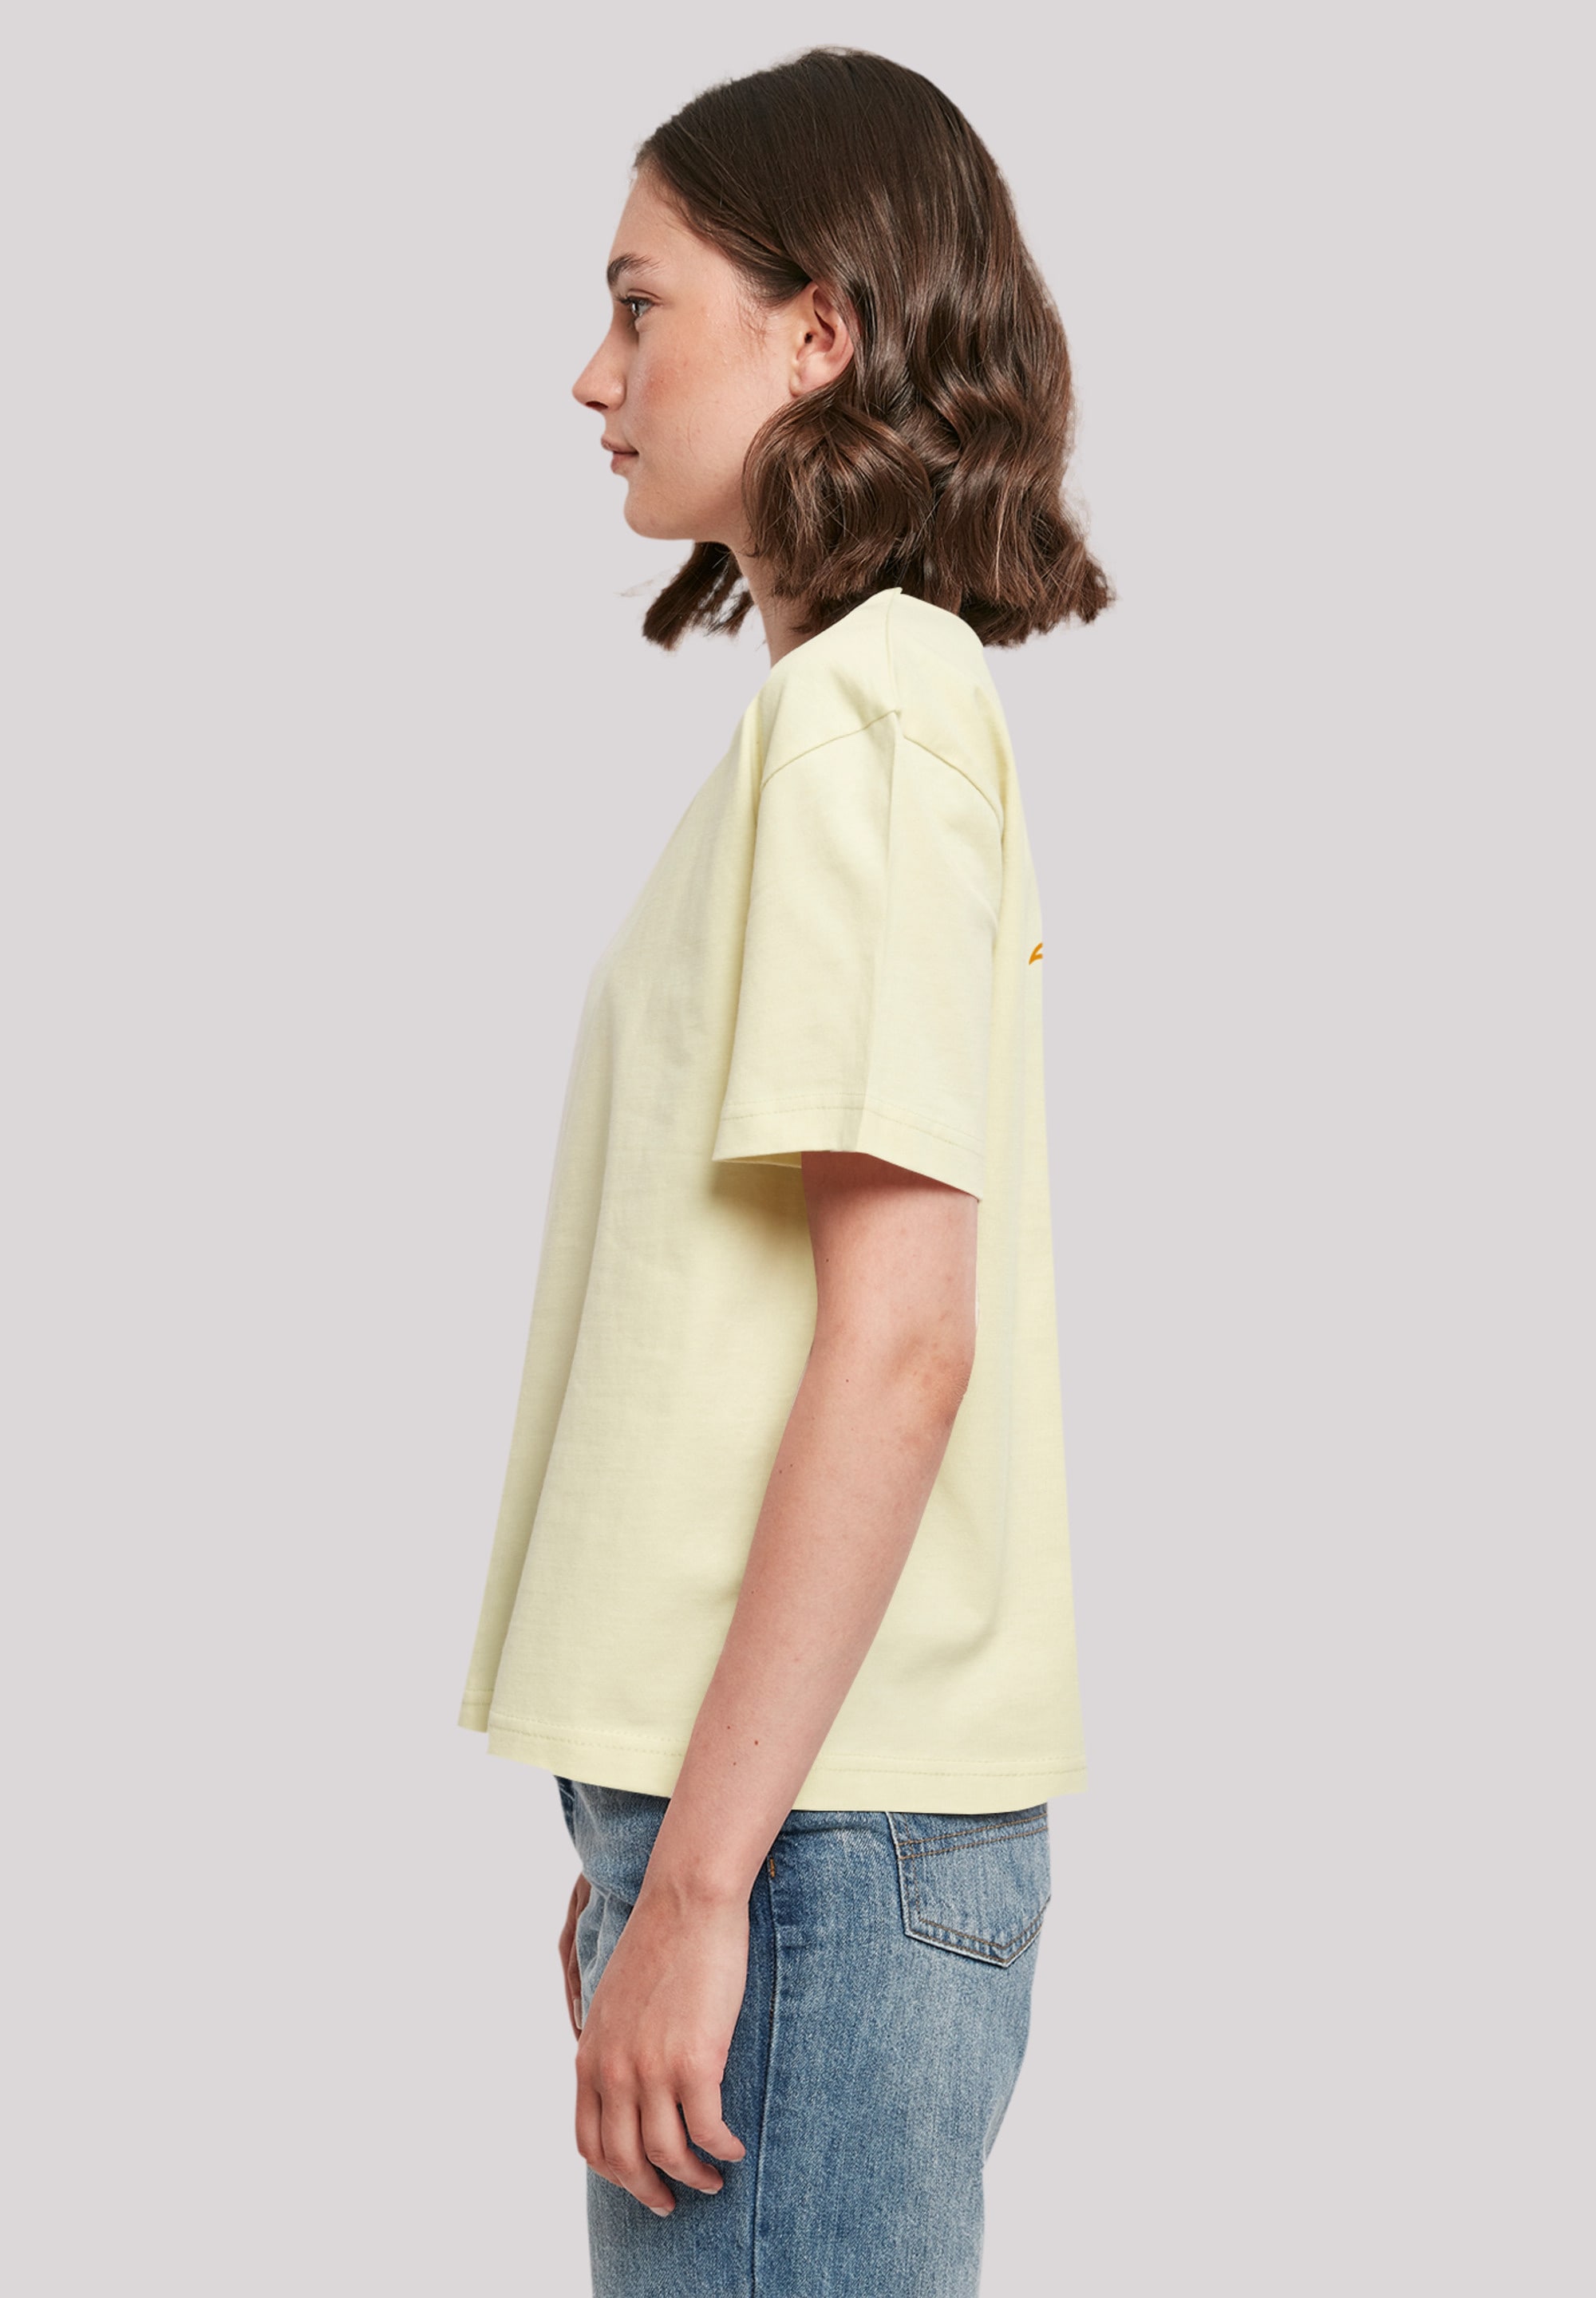 F4NT4STIC T-Shirt »Sunny side up«, Print